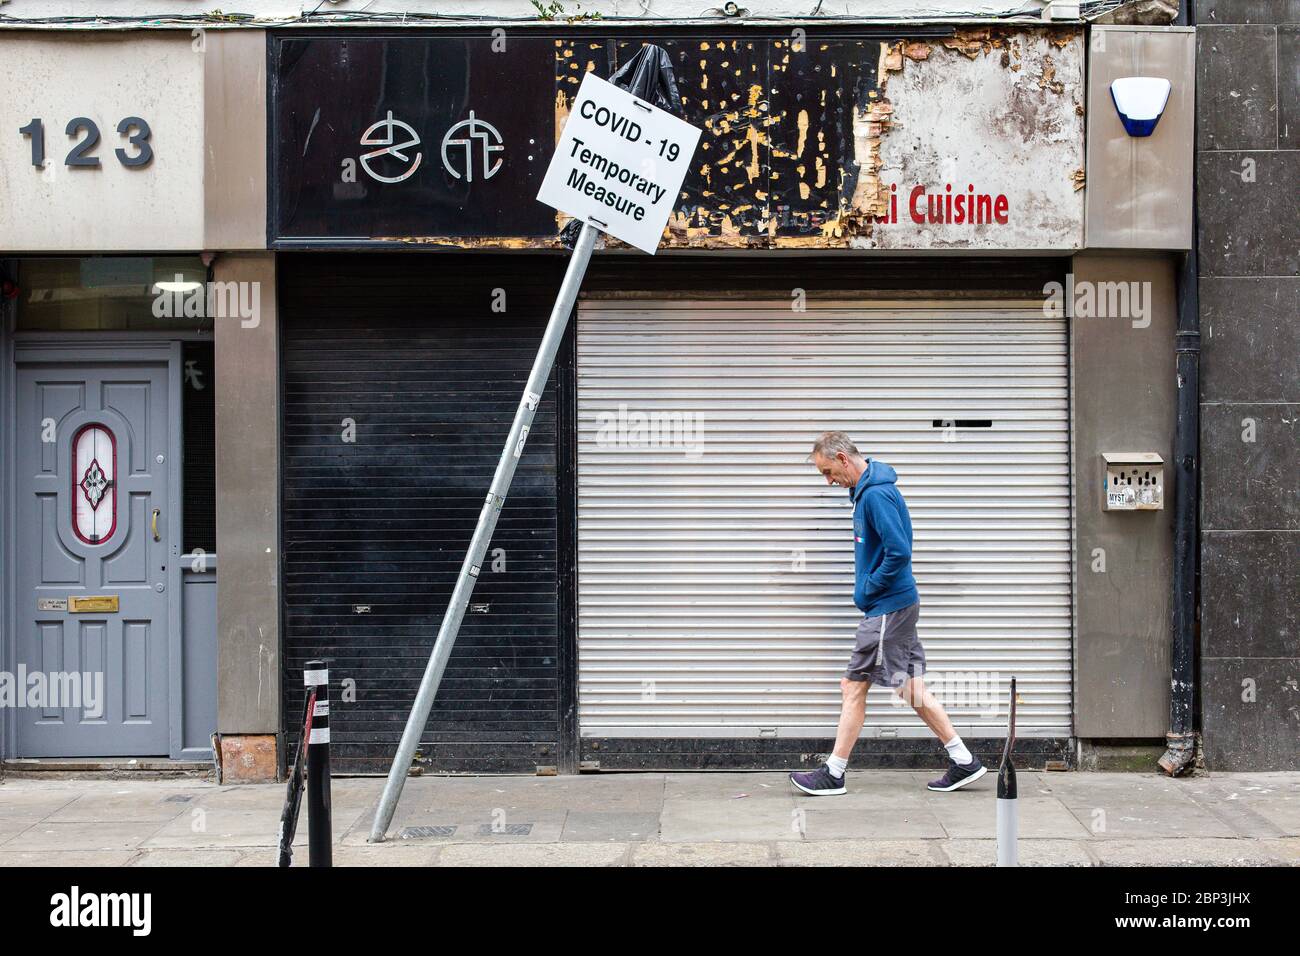 El hombre pasa por una tienda cerrada y un letrero de inclinación - Covid-19 medida temporal. Pandemia de coronavirus y su impacto económico. Mayo de 2020, Dublín, Irlanda. Foto de stock